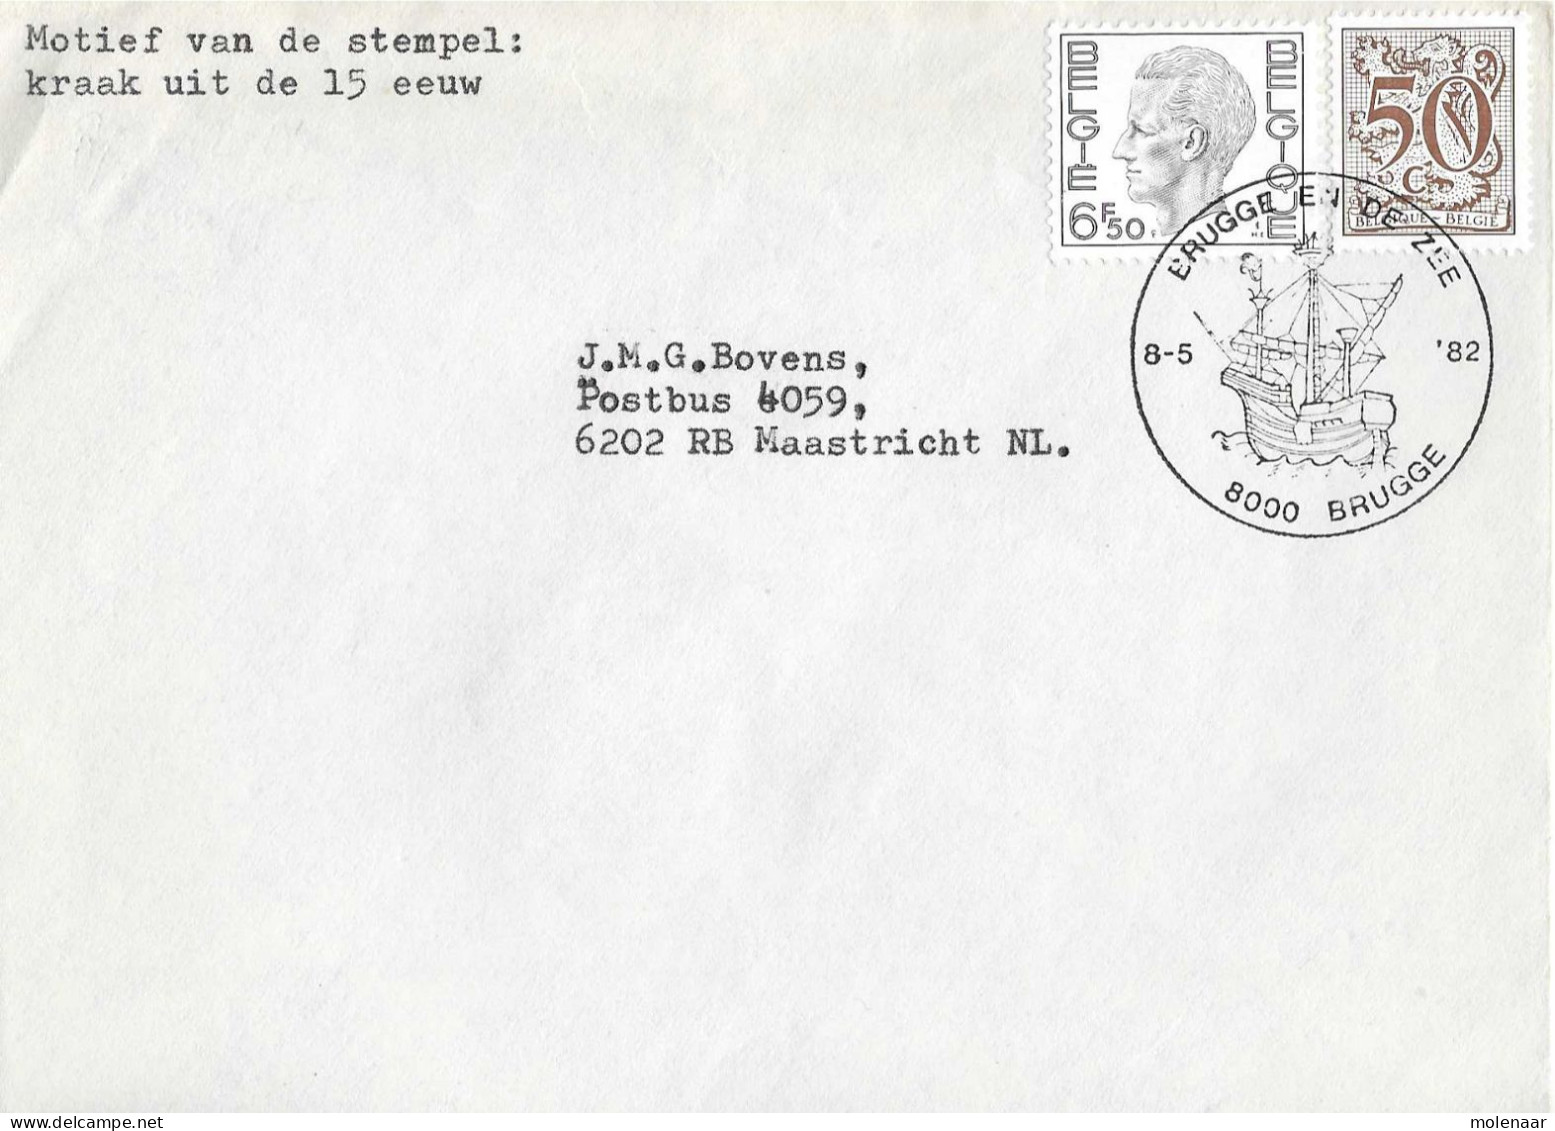 Postzegels > Europa > België > 1951-... > 1981-1990 > Brief Uit 1982 Met 2 Zegels (17041) - Briefe U. Dokumente